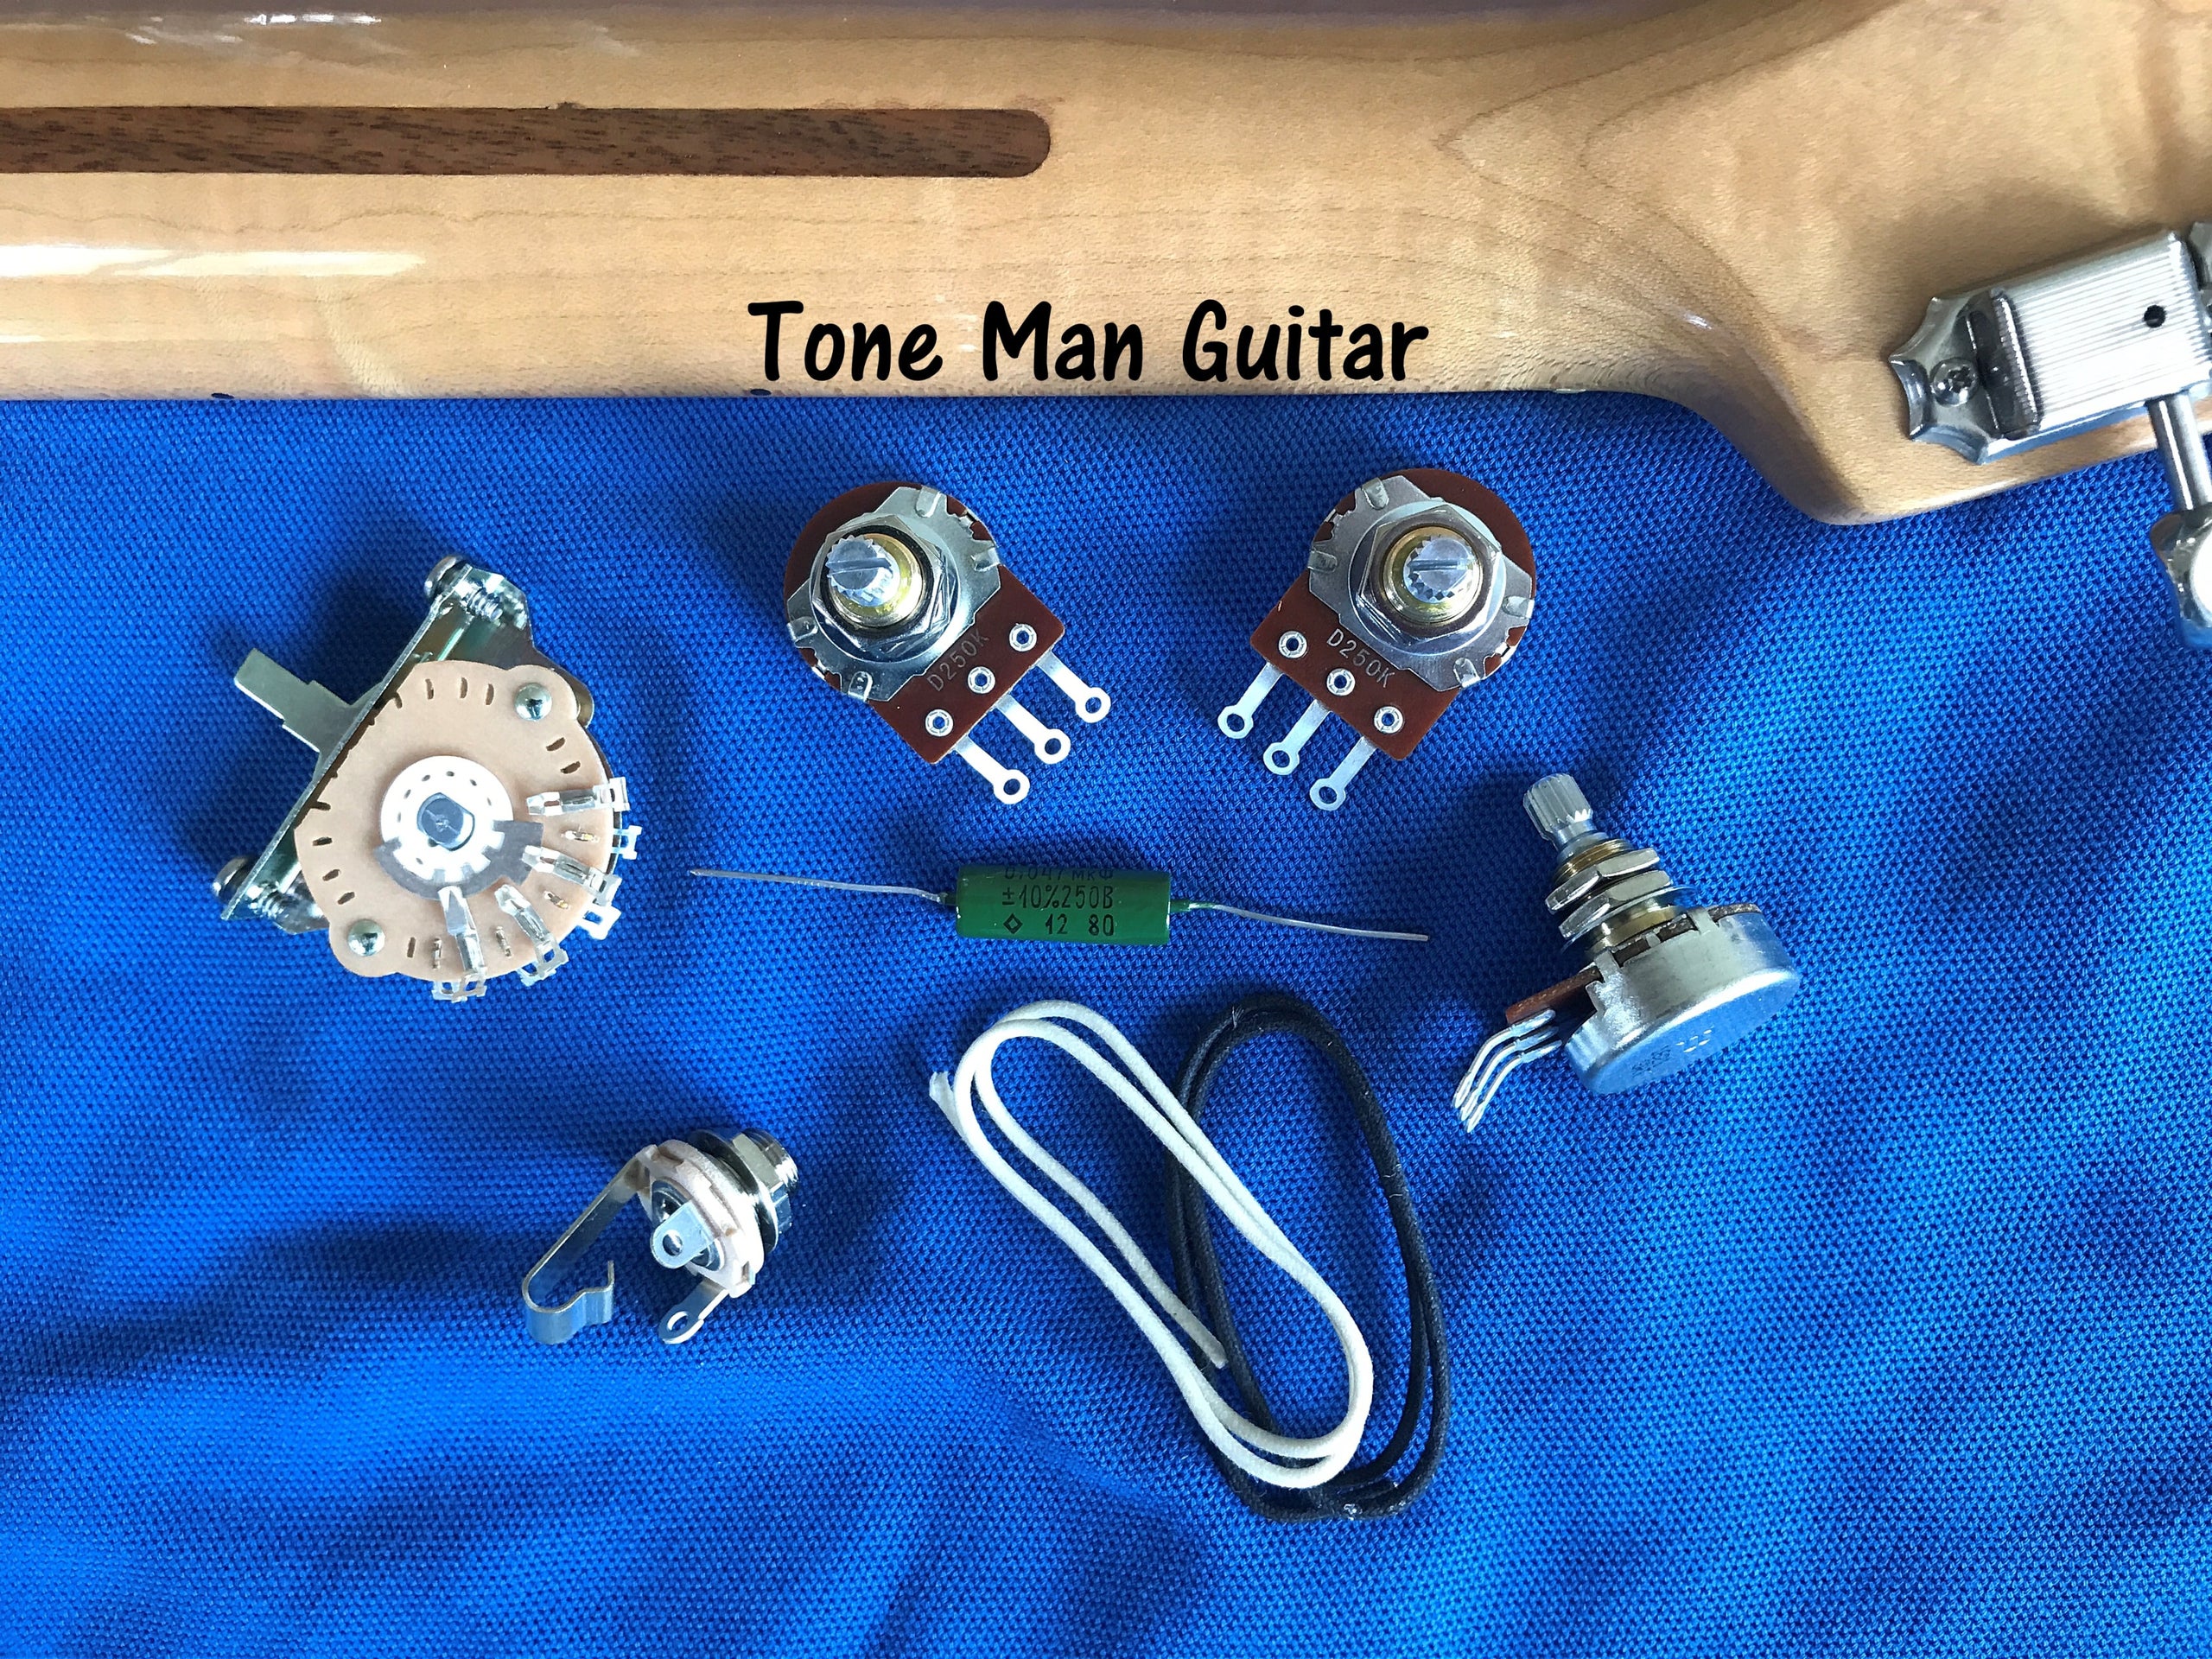 Guitar upgrade wiring kits  Tone Man Guitar upgrade wiring kits